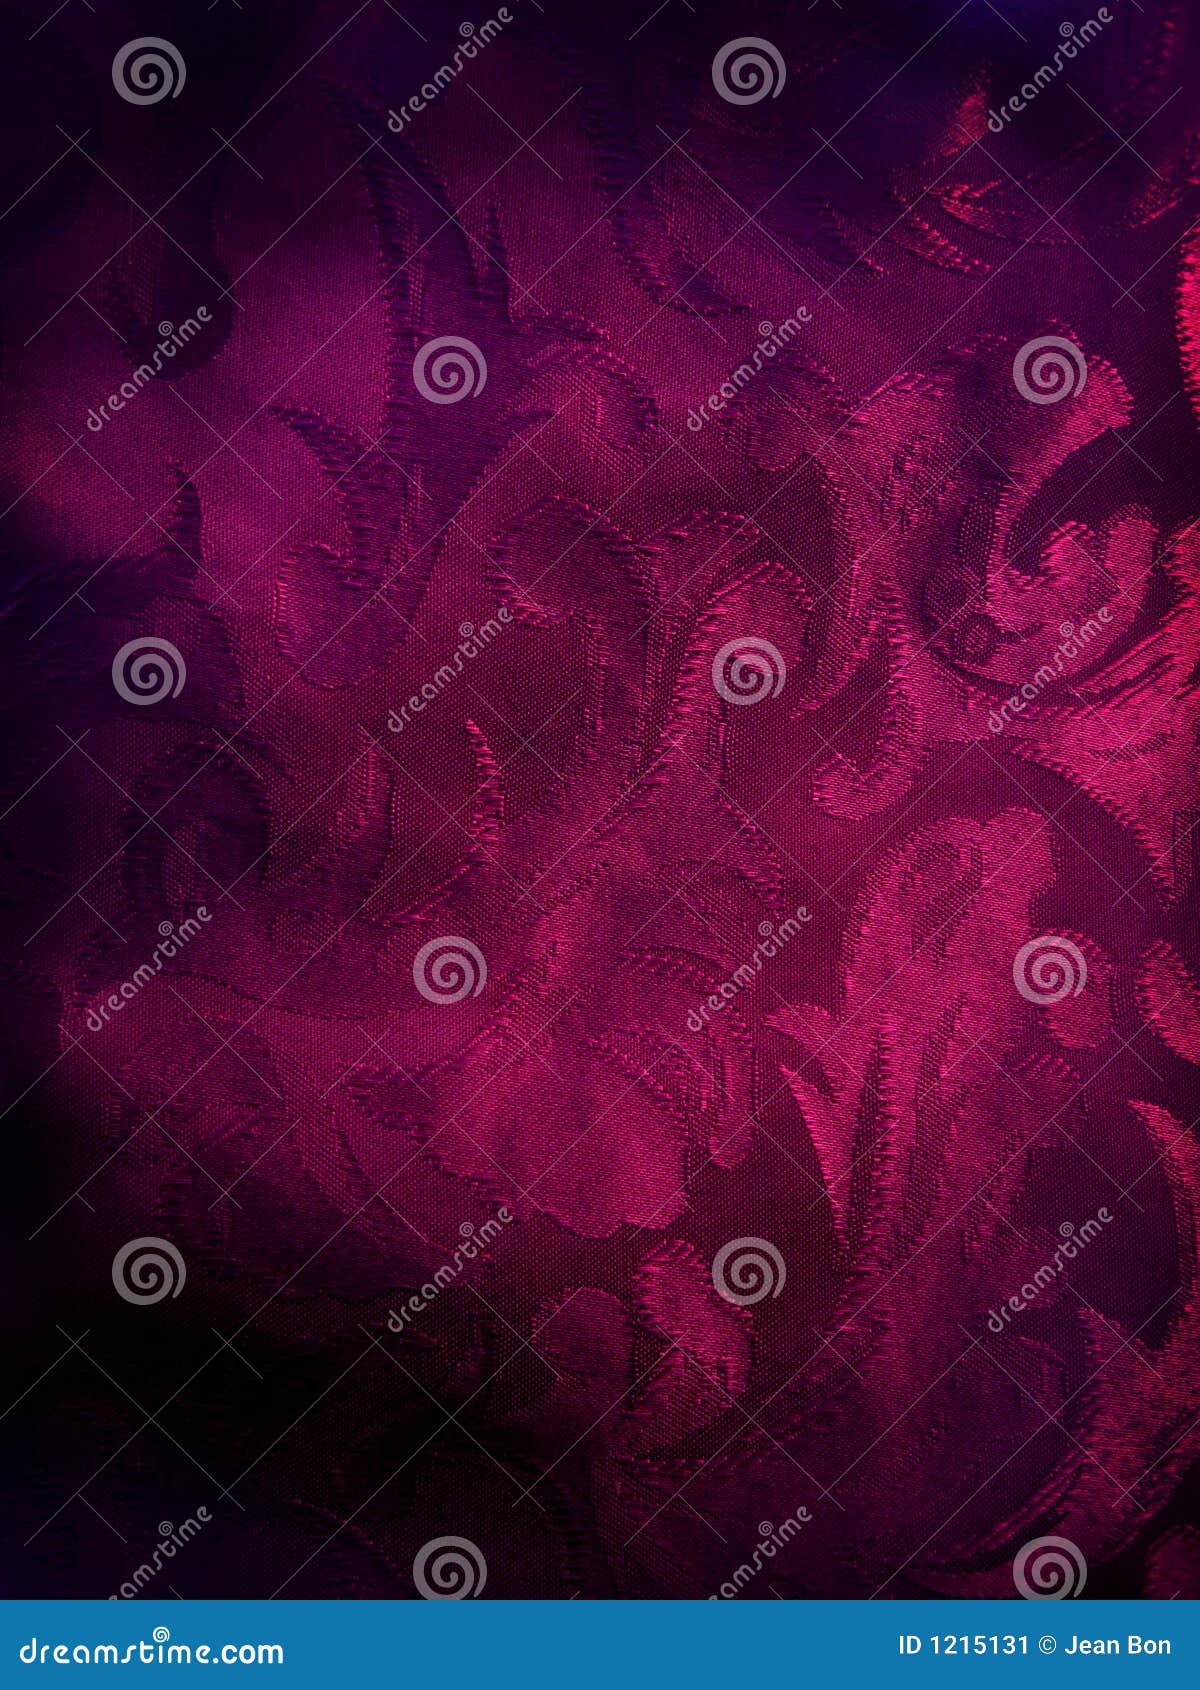 dark violet fabric background